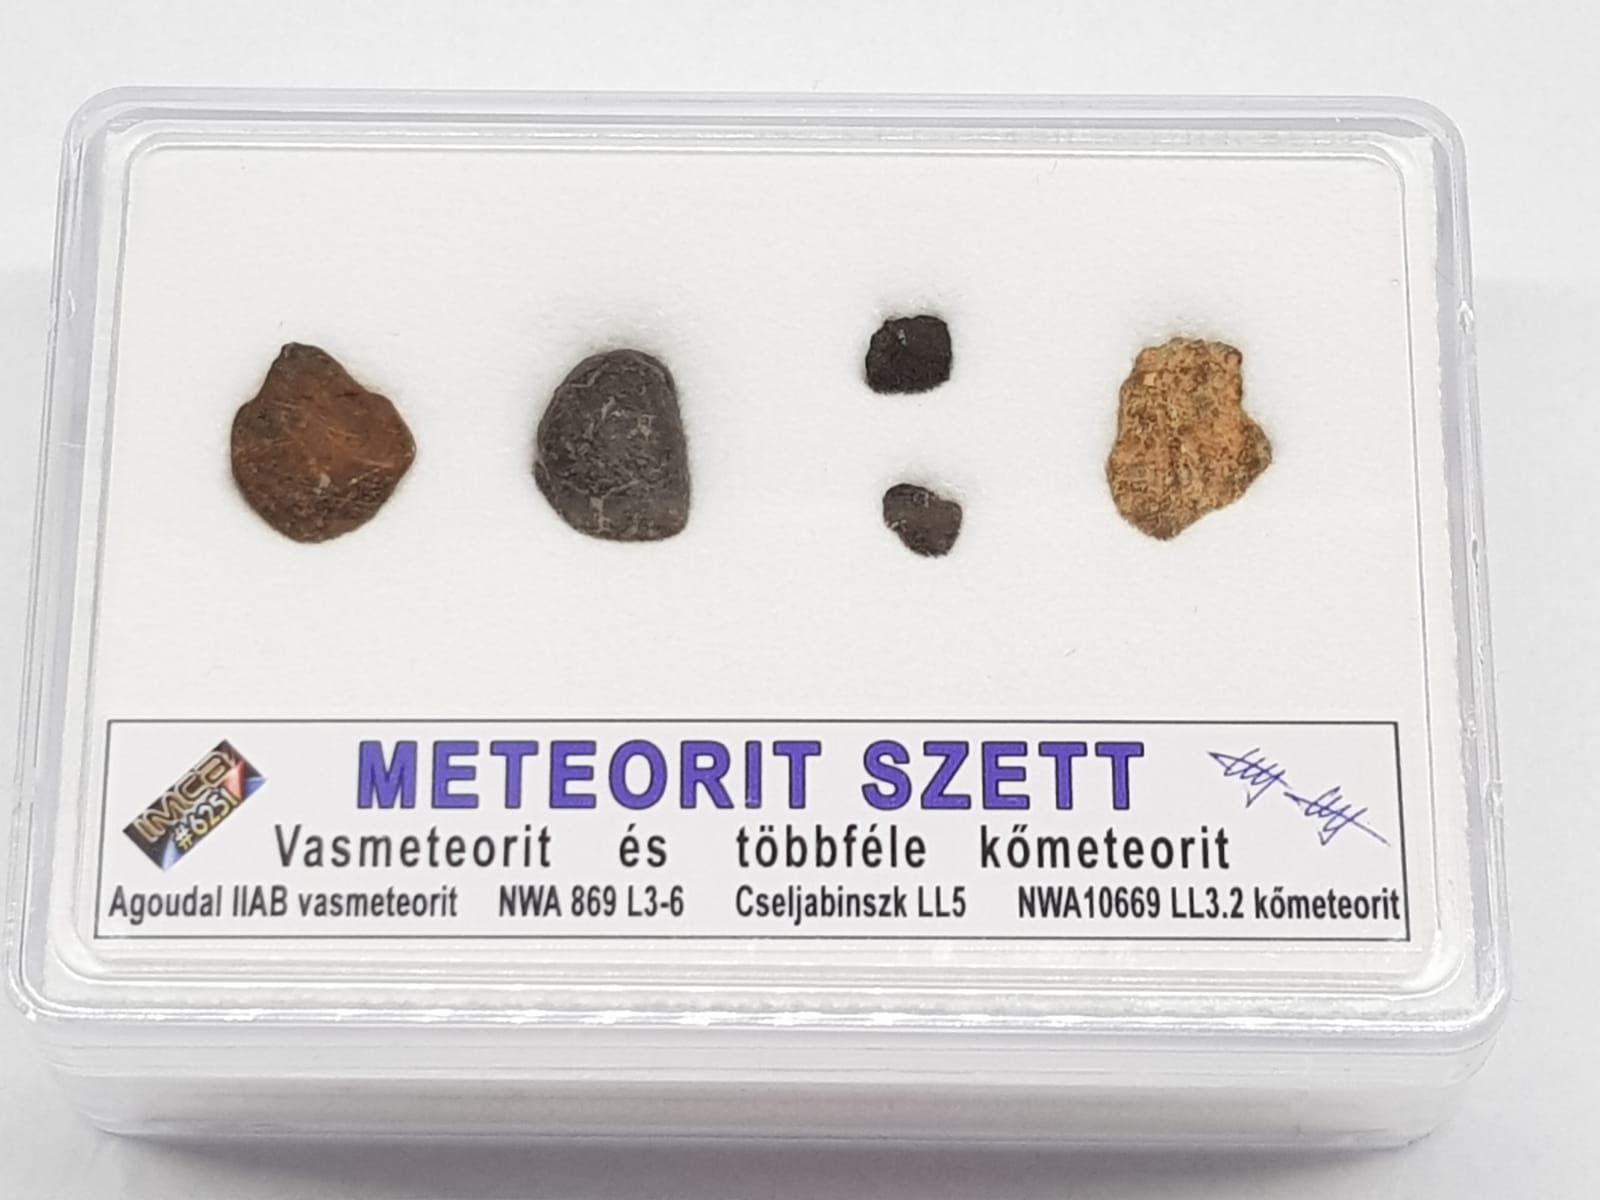 Meteorit szett gyűjtőknek